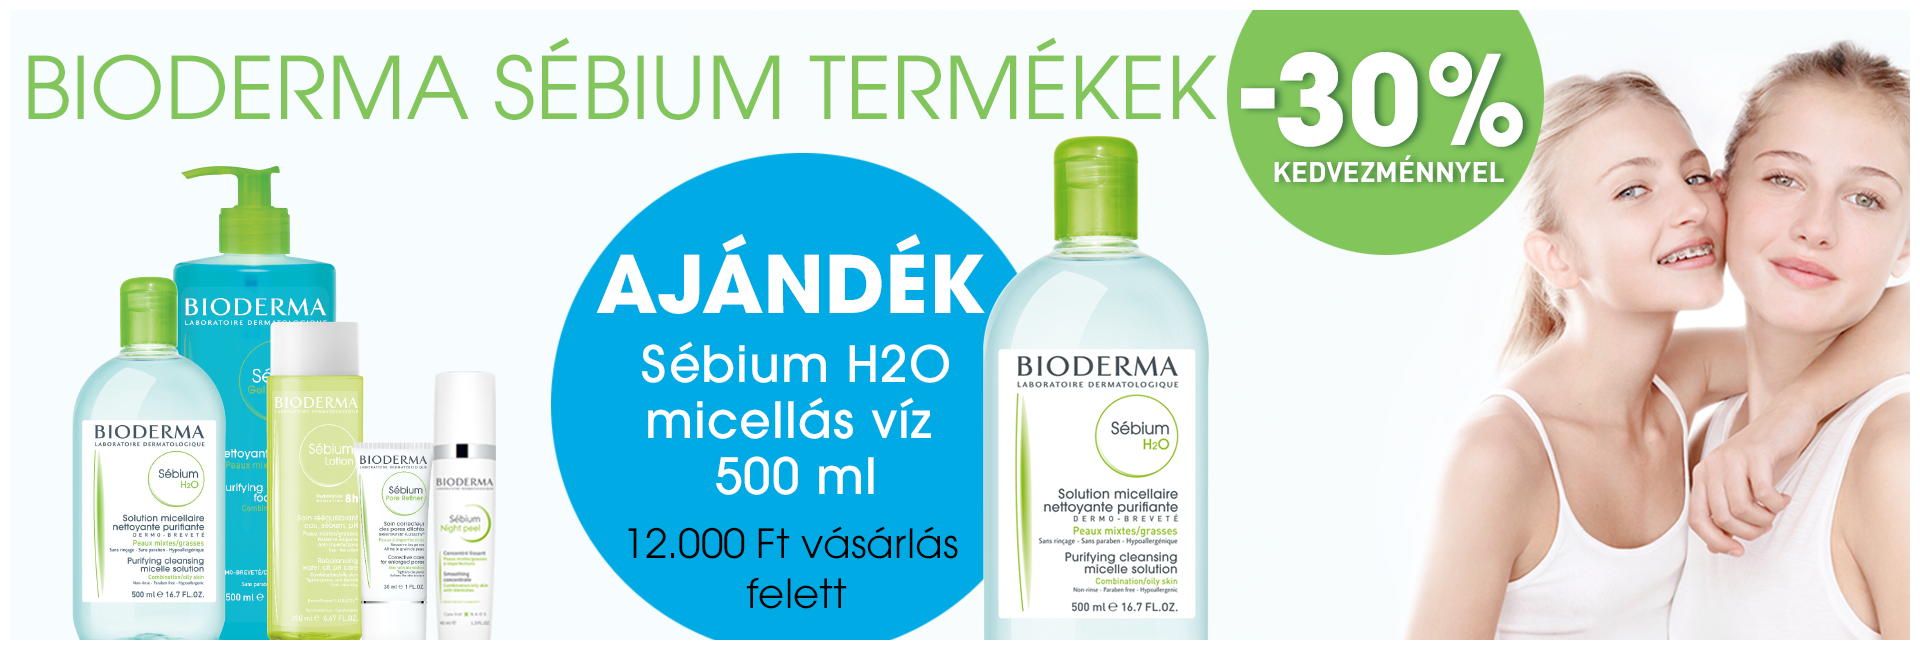 2020. szeptember 30-ig minden Bioderma Sébium terméket 30% kedvezménnyel kínálunk!